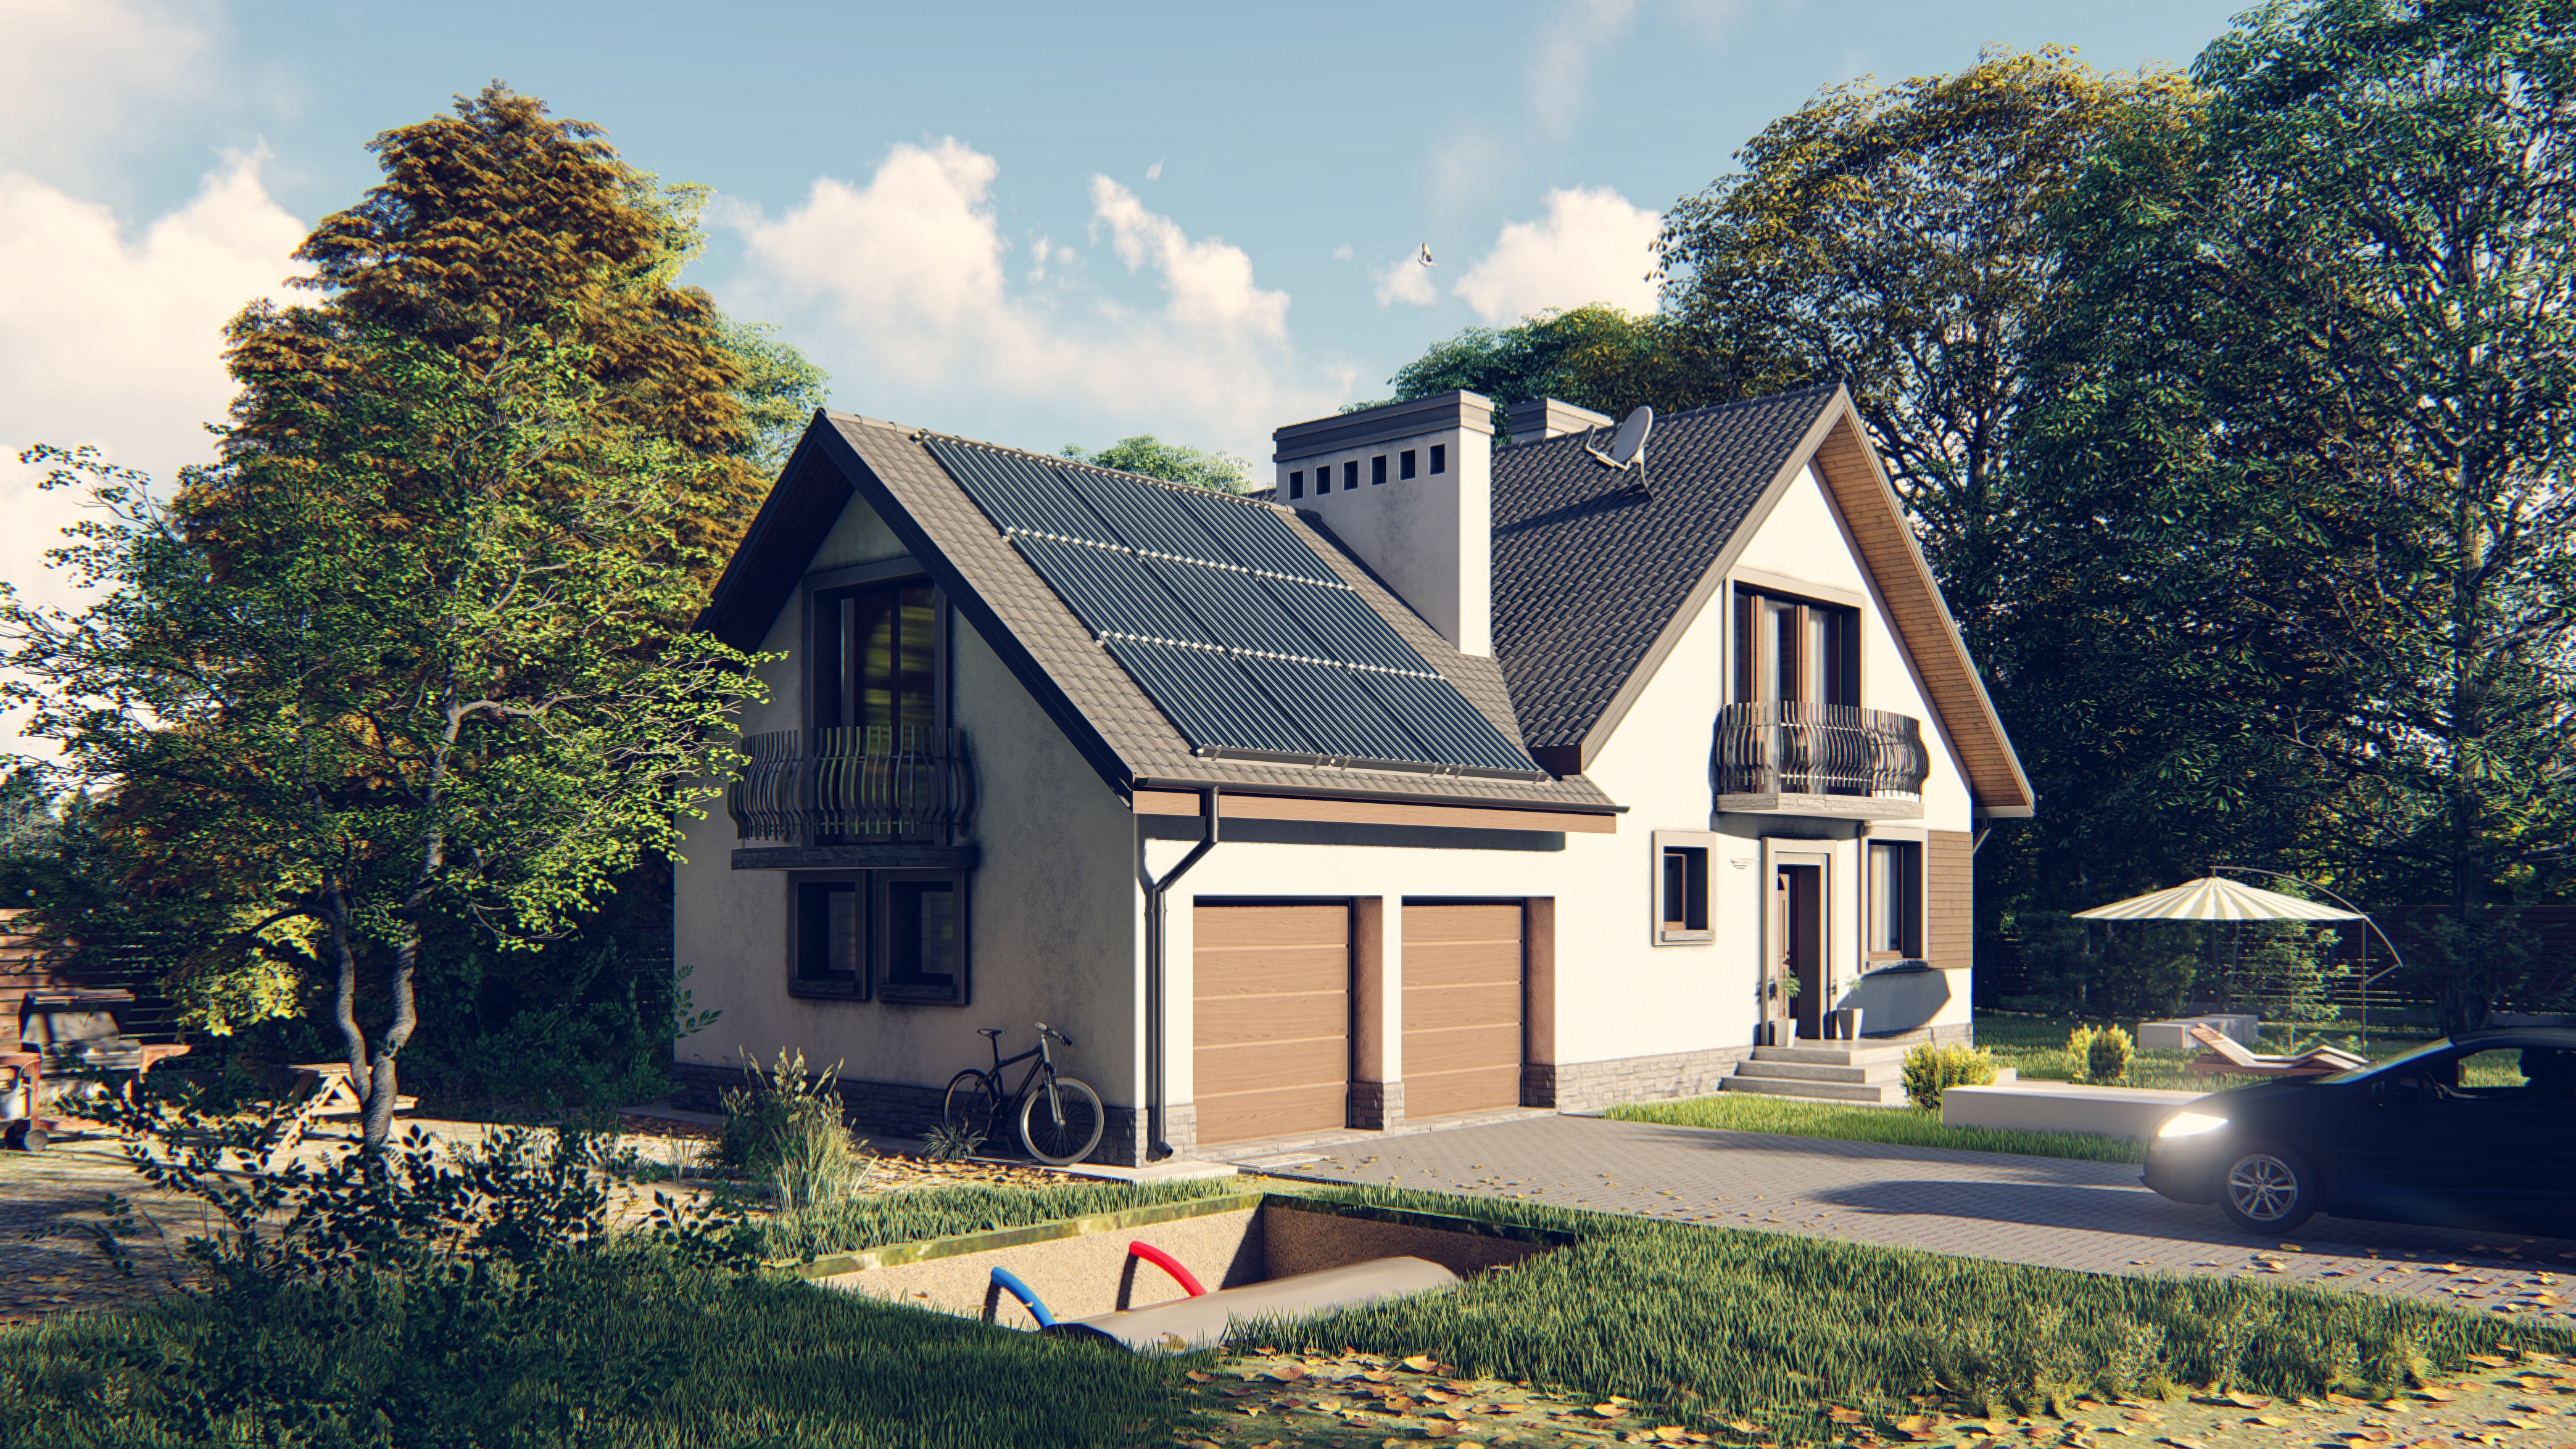 Zdjęcie przedstawia dom rodzinny z zamontowanym na dachu kolektorem słonecznym. Dom jest otoczony drzewami. Przed domem ogród, w którym stoi parasol przeciwsłoneczny, leżak. Na podjeździe do domu samochód.